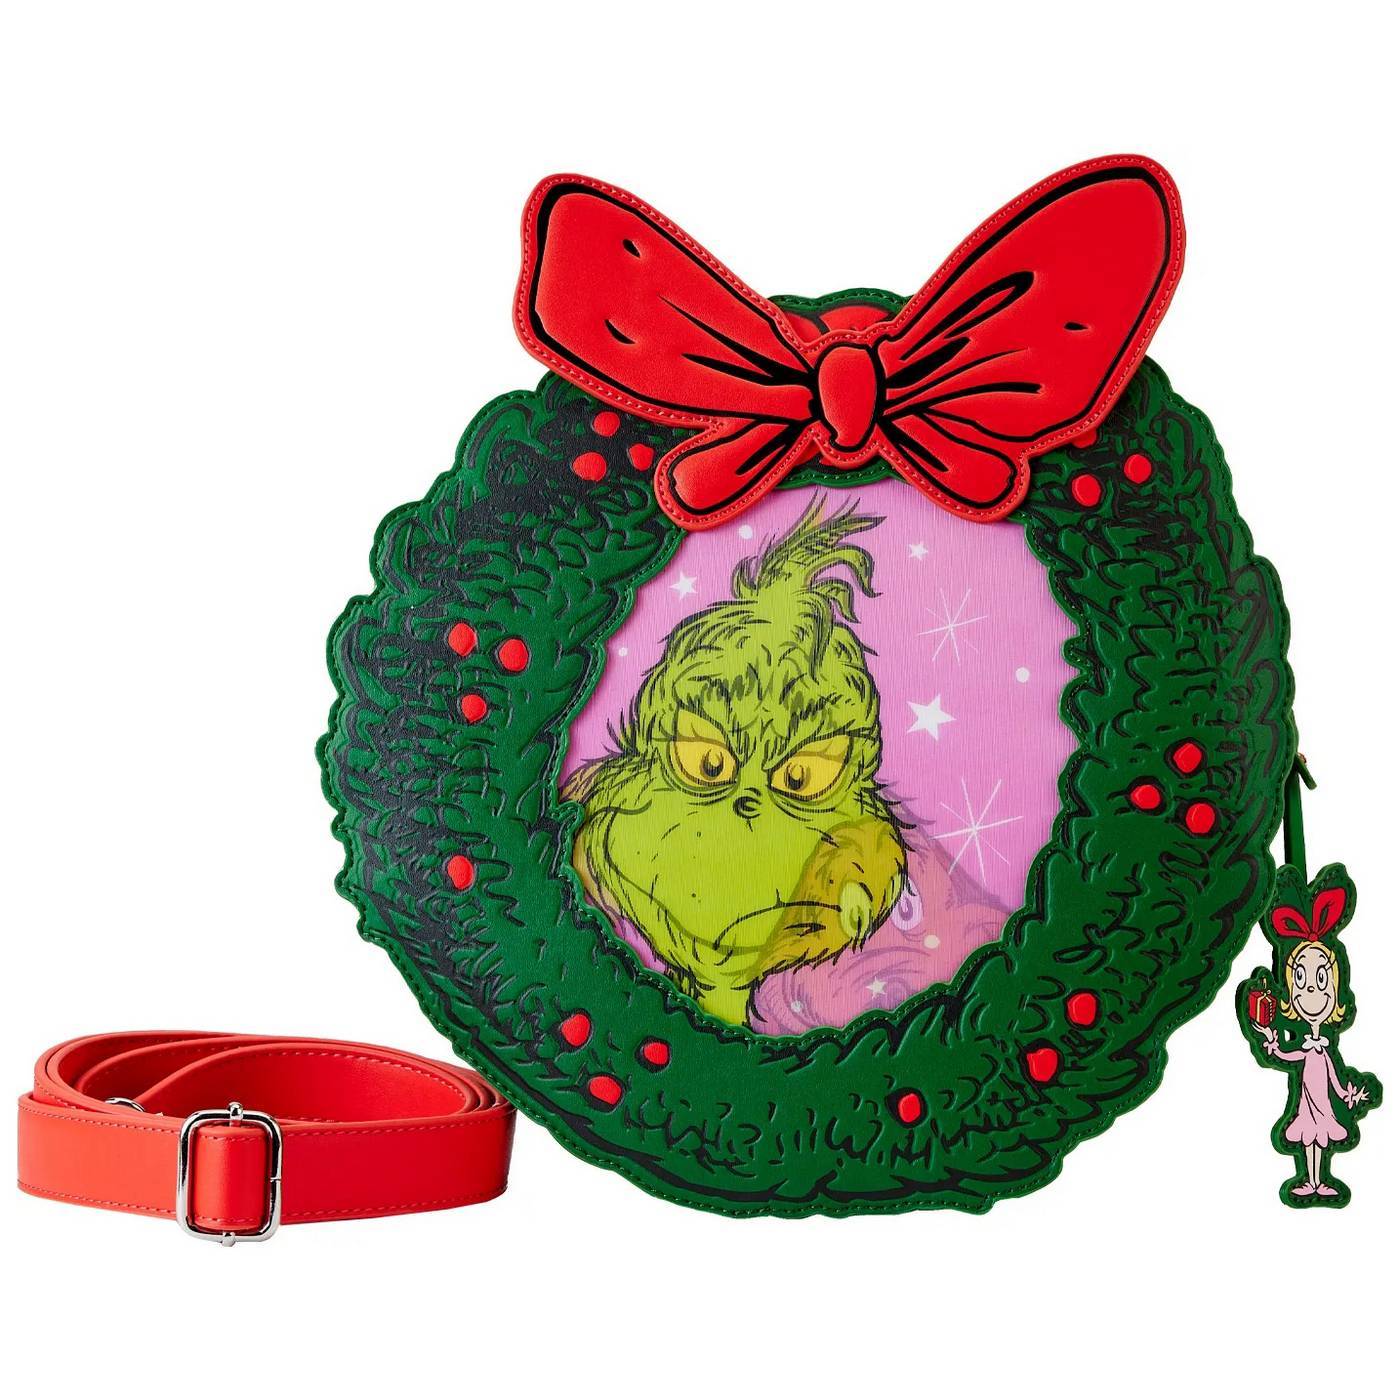 How the Grinch Stole Christmas Wreath Lenticular